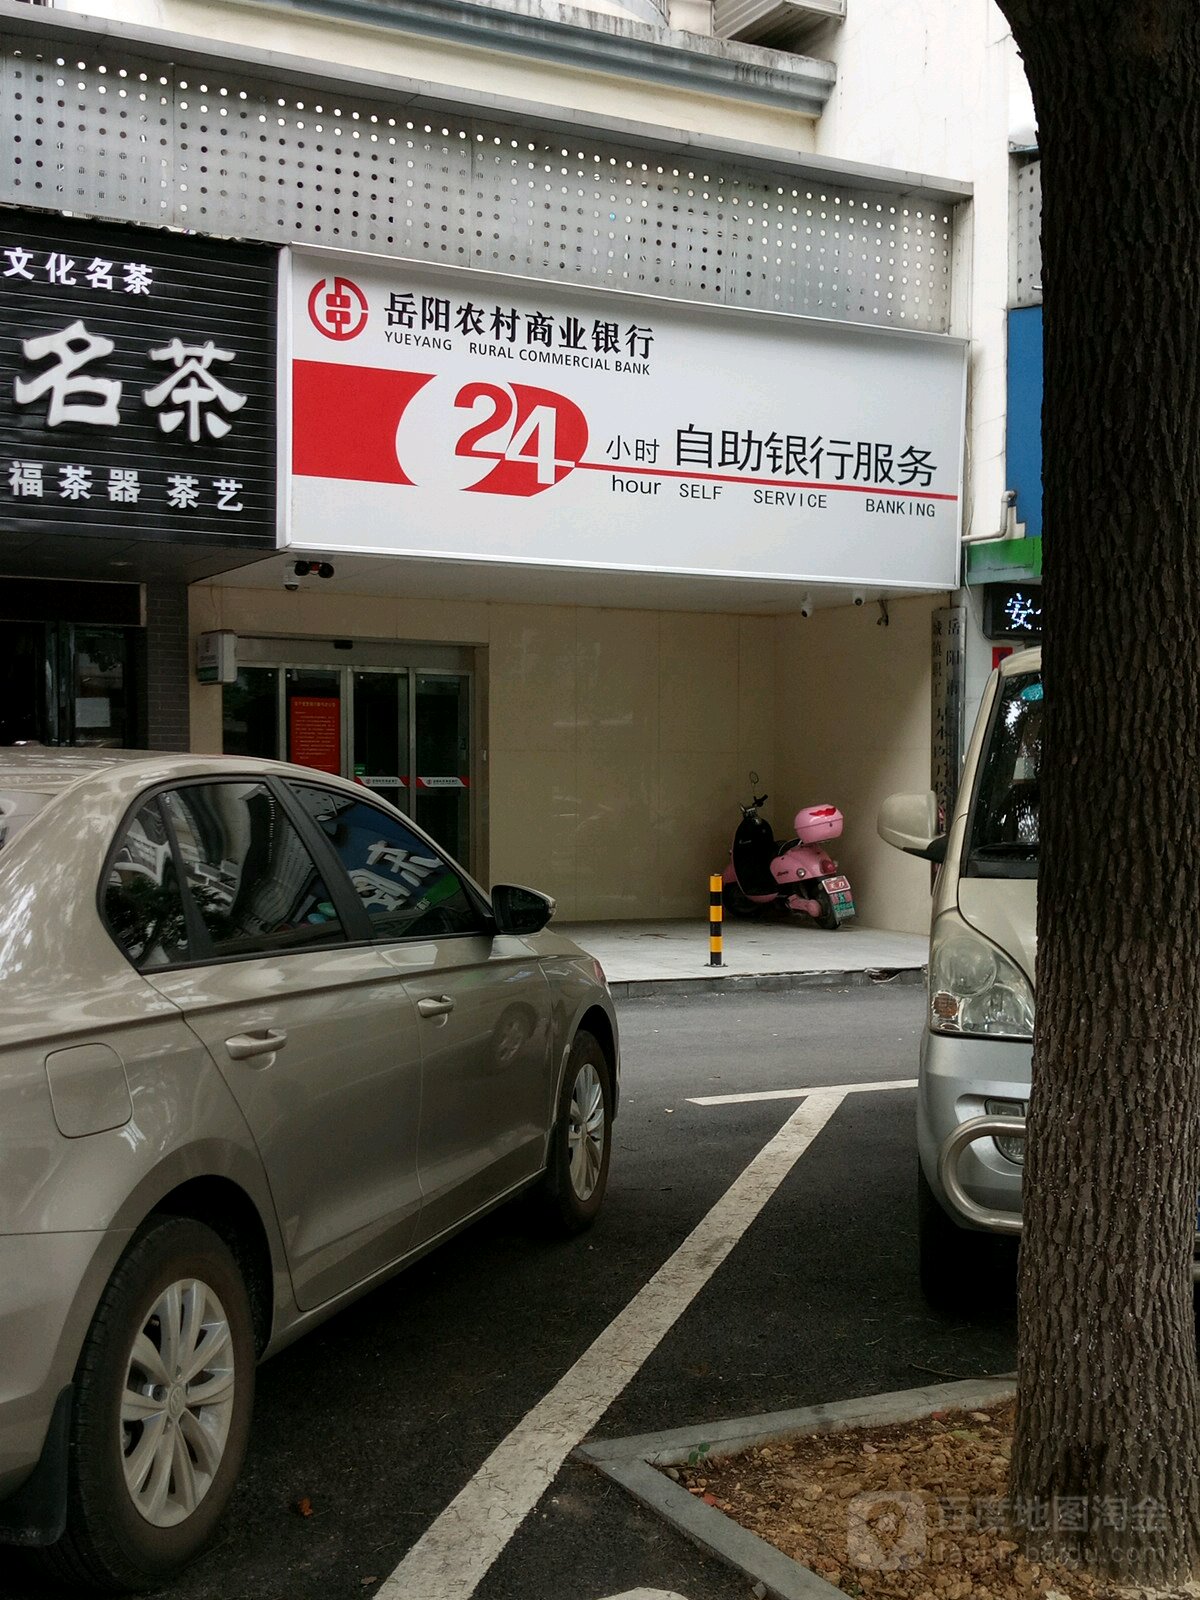 湖南省农村信用社24小时自助银行服务